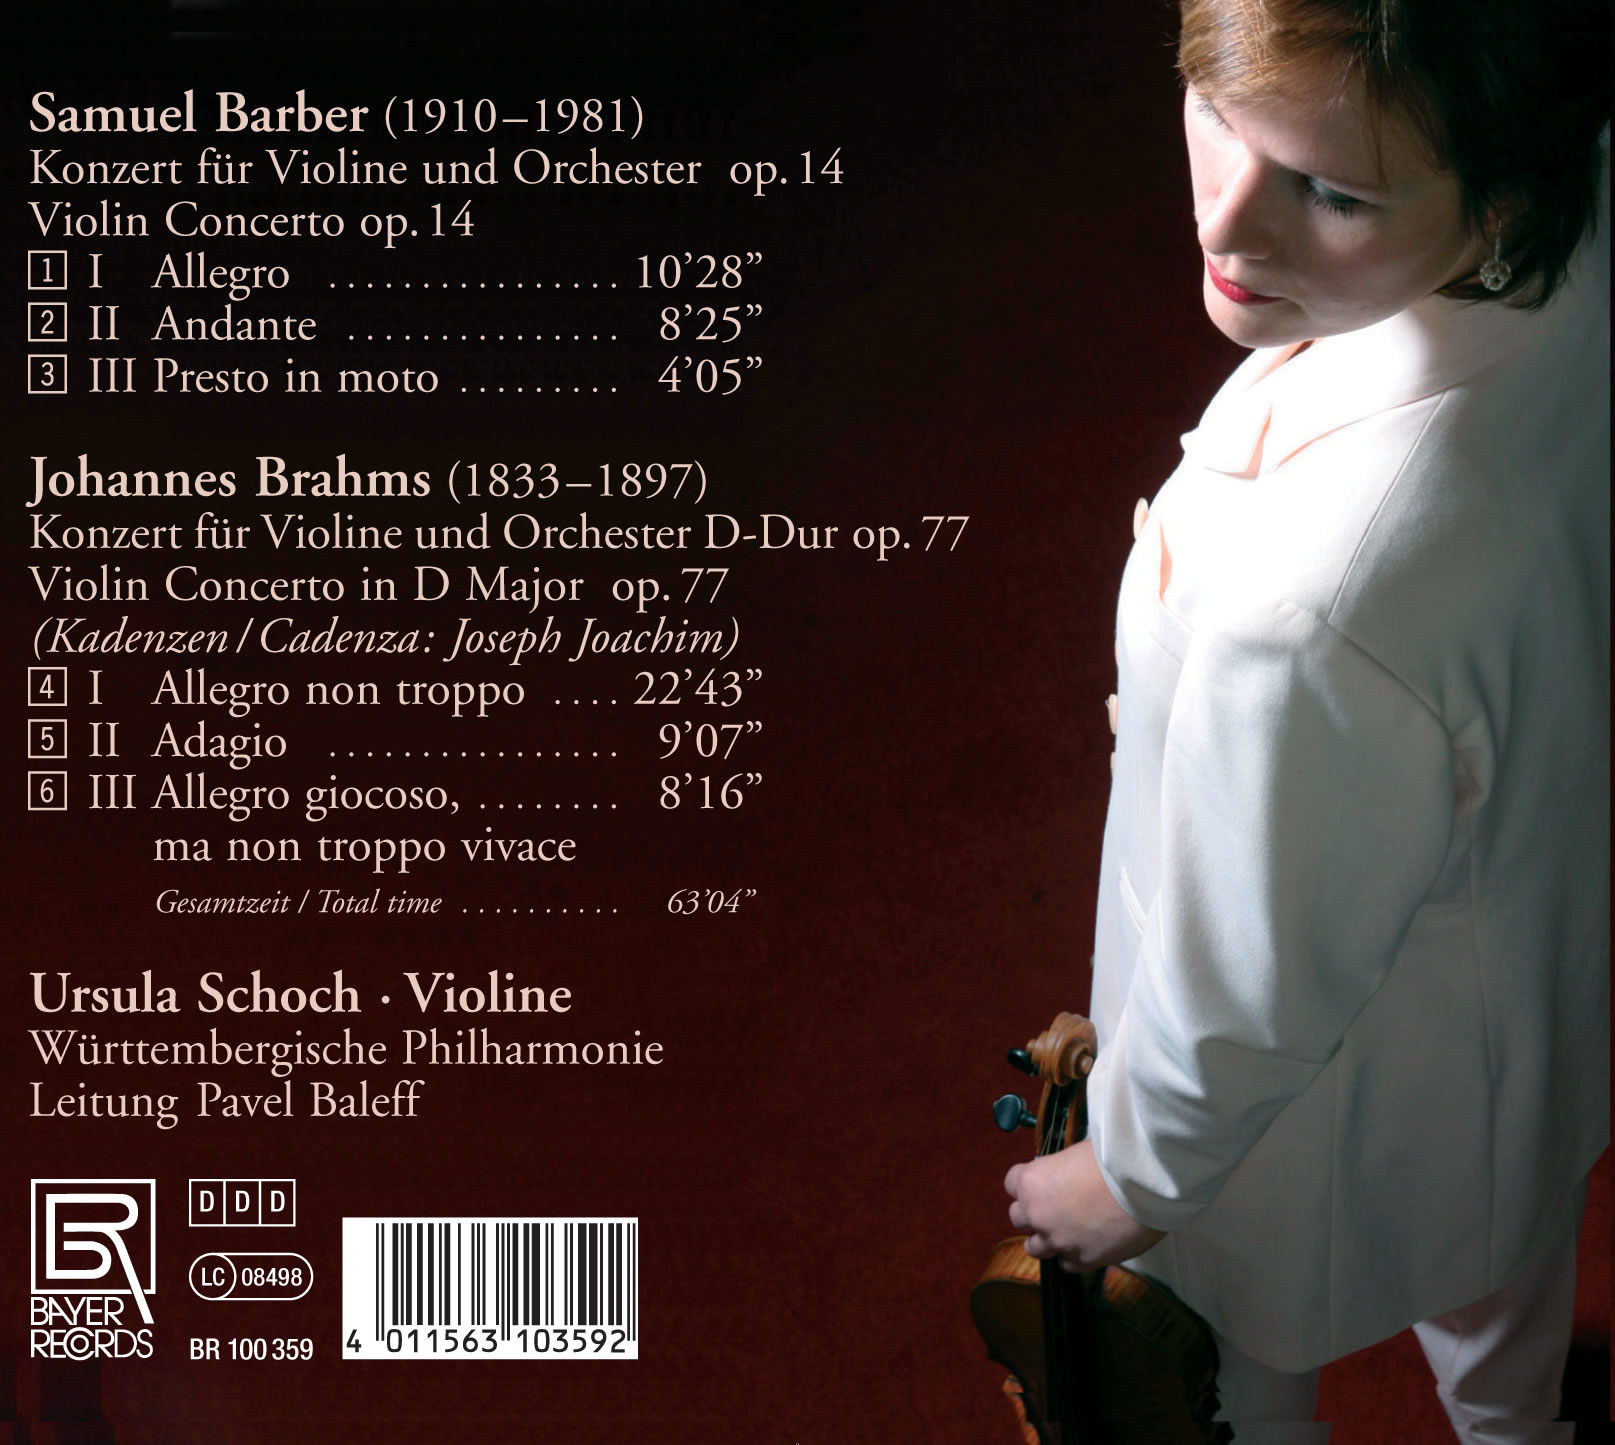 Ursula Schoch spielt Violinkonzerte von Barber und Brahms